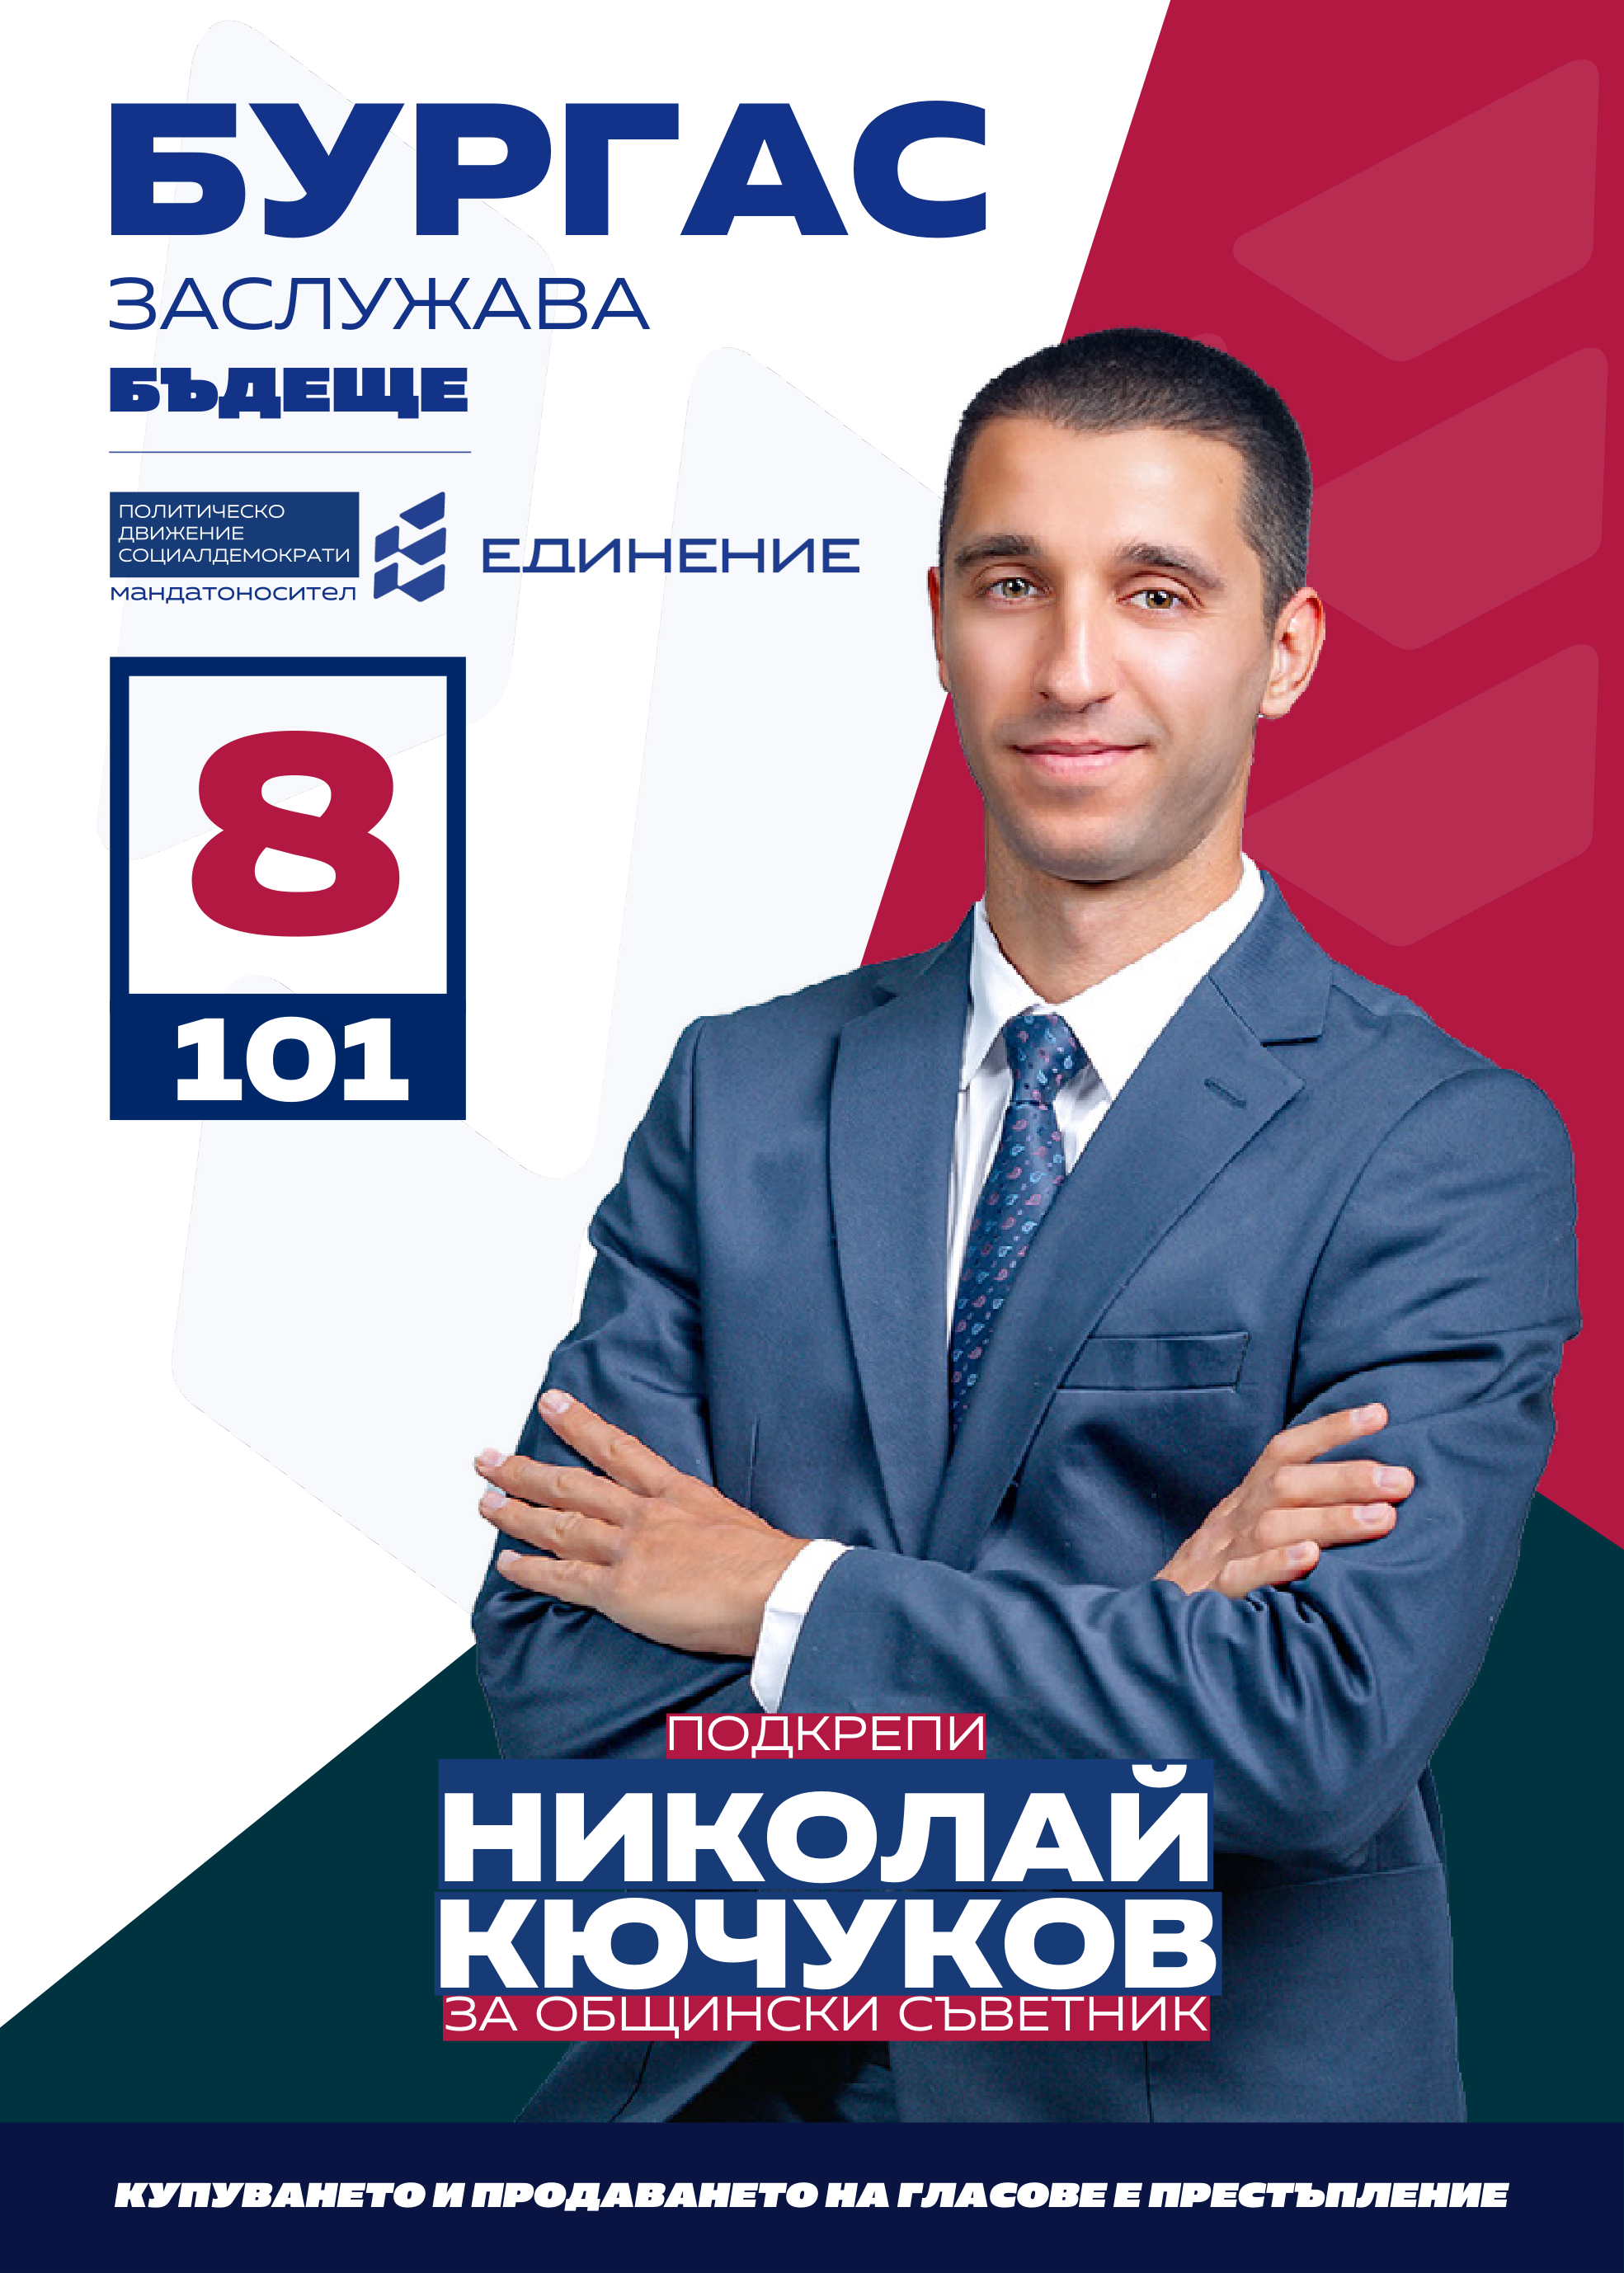 Николай Кючуков – ВиК инженер треньор
Николай Кючуков е на 31